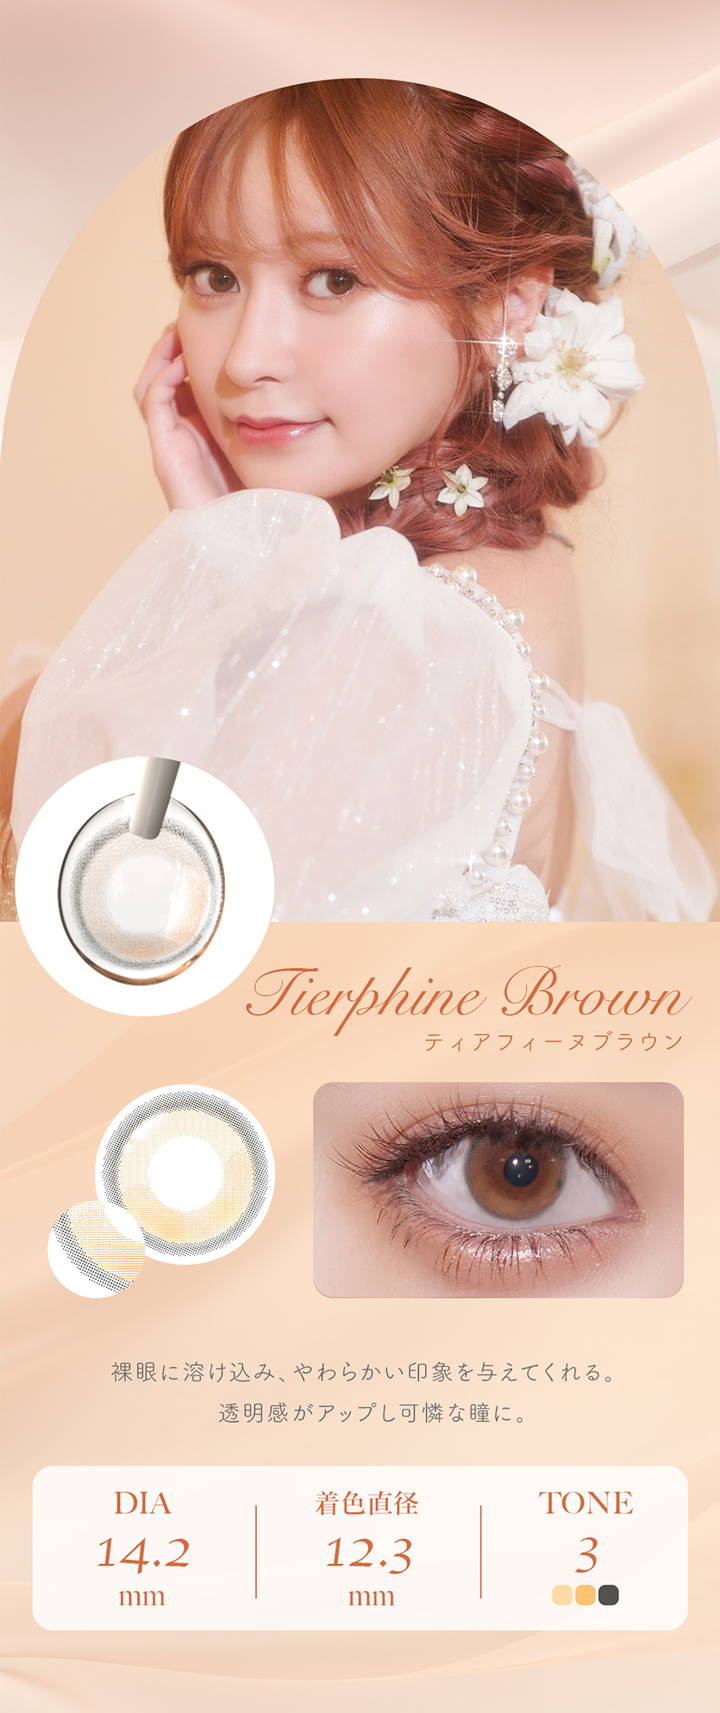 フェレーヌ(ferenne),Tierphine Brown,ティアフィーヌブラウン,裸眼に溶け込み、やわらかい印象を与えてくれる。,透明感がアップし可憐な瞳に。,DIA 14.2mm,着色直径 12.3mm,TONE 3|フェレーヌ ferenne カラコン カラーコンタクト